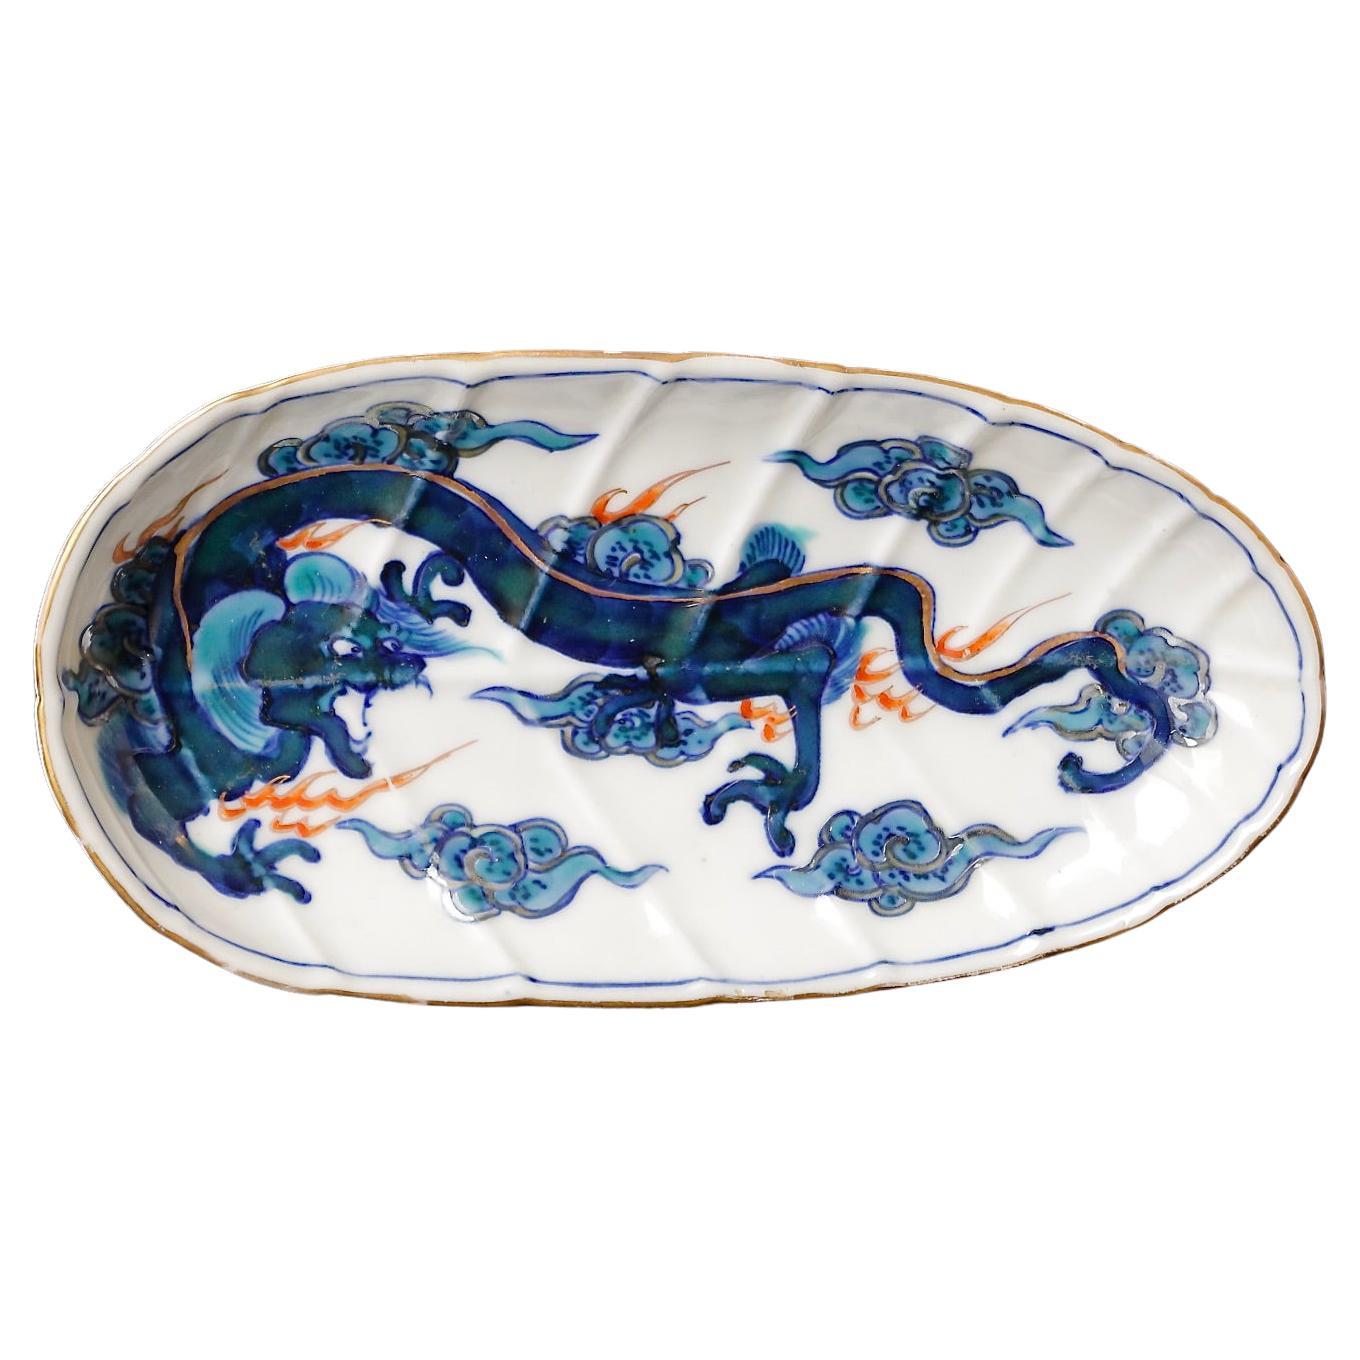 Set '10 Pc.' of Edo Period Imari Porcelain Plates with Dragon Motive